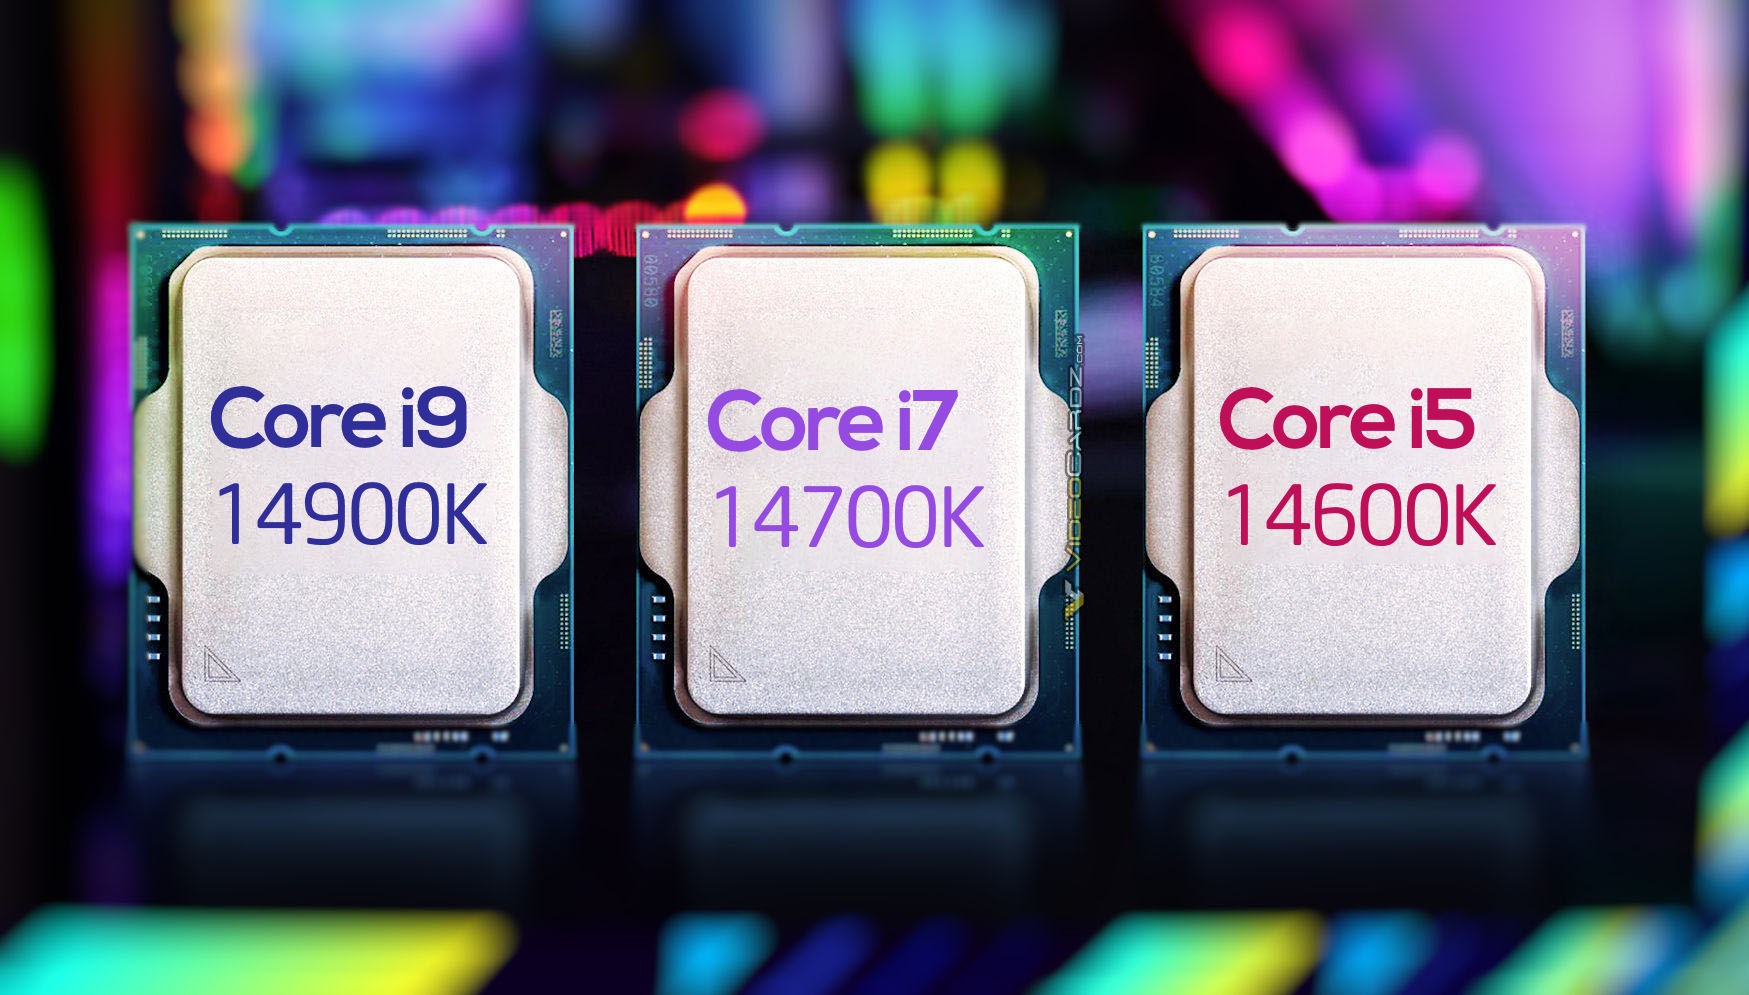 Intel Core i5-14600K lansmandan önce test edildi: İşte sonuçlar